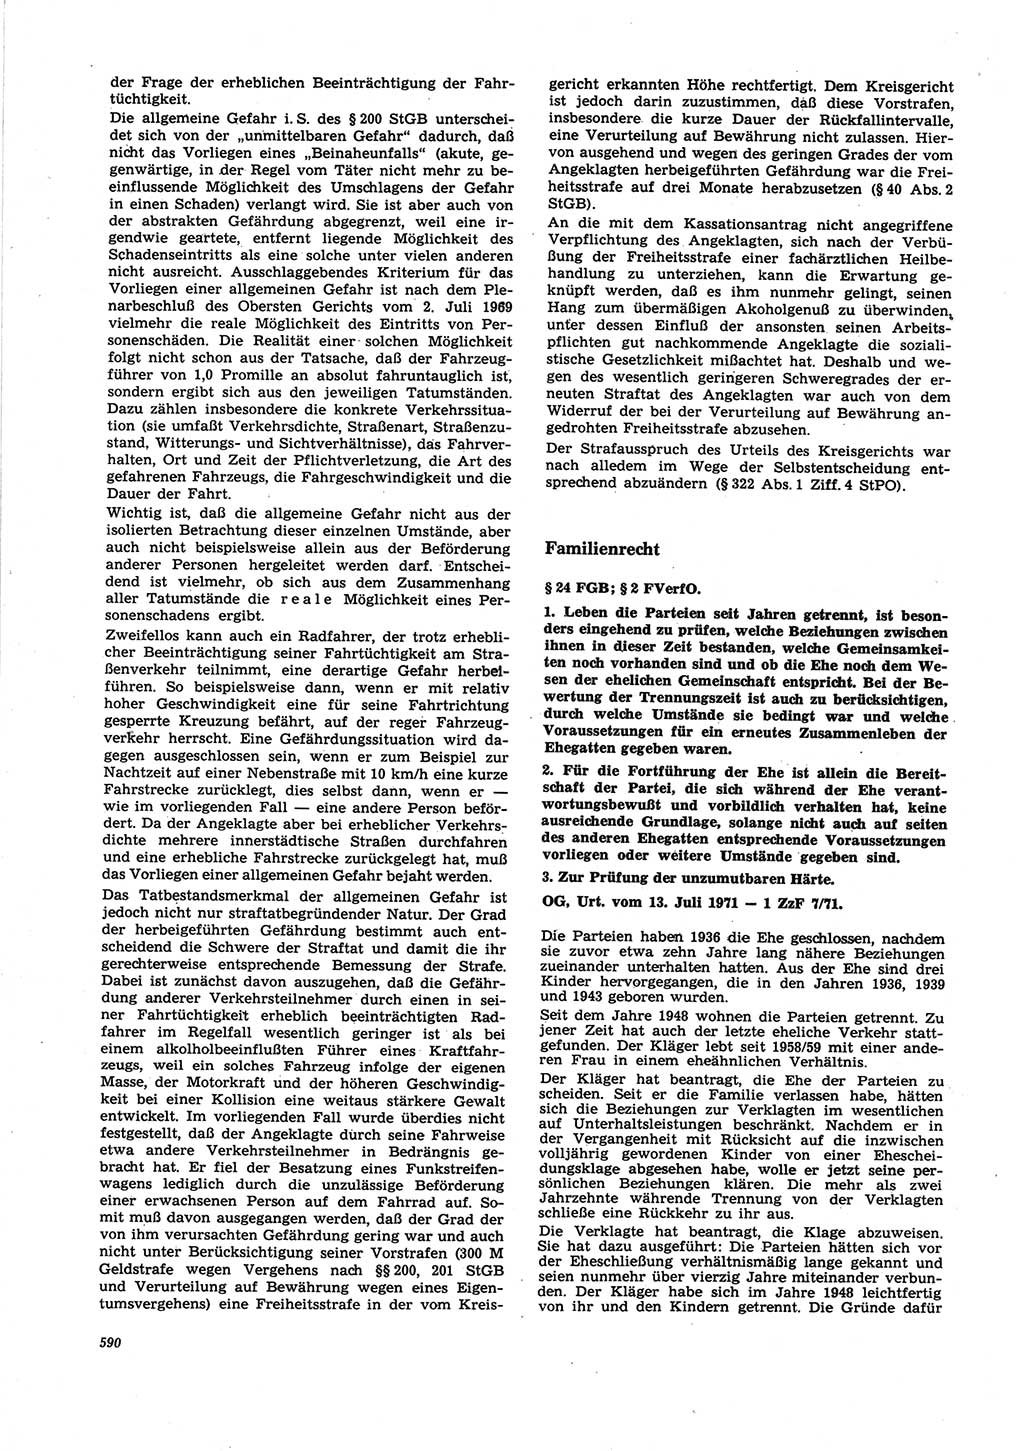 Neue Justiz (NJ), Zeitschrift für Recht und Rechtswissenschaft [Deutsche Demokratische Republik (DDR)], 25. Jahrgang 1971, Seite 590 (NJ DDR 1971, S. 590)